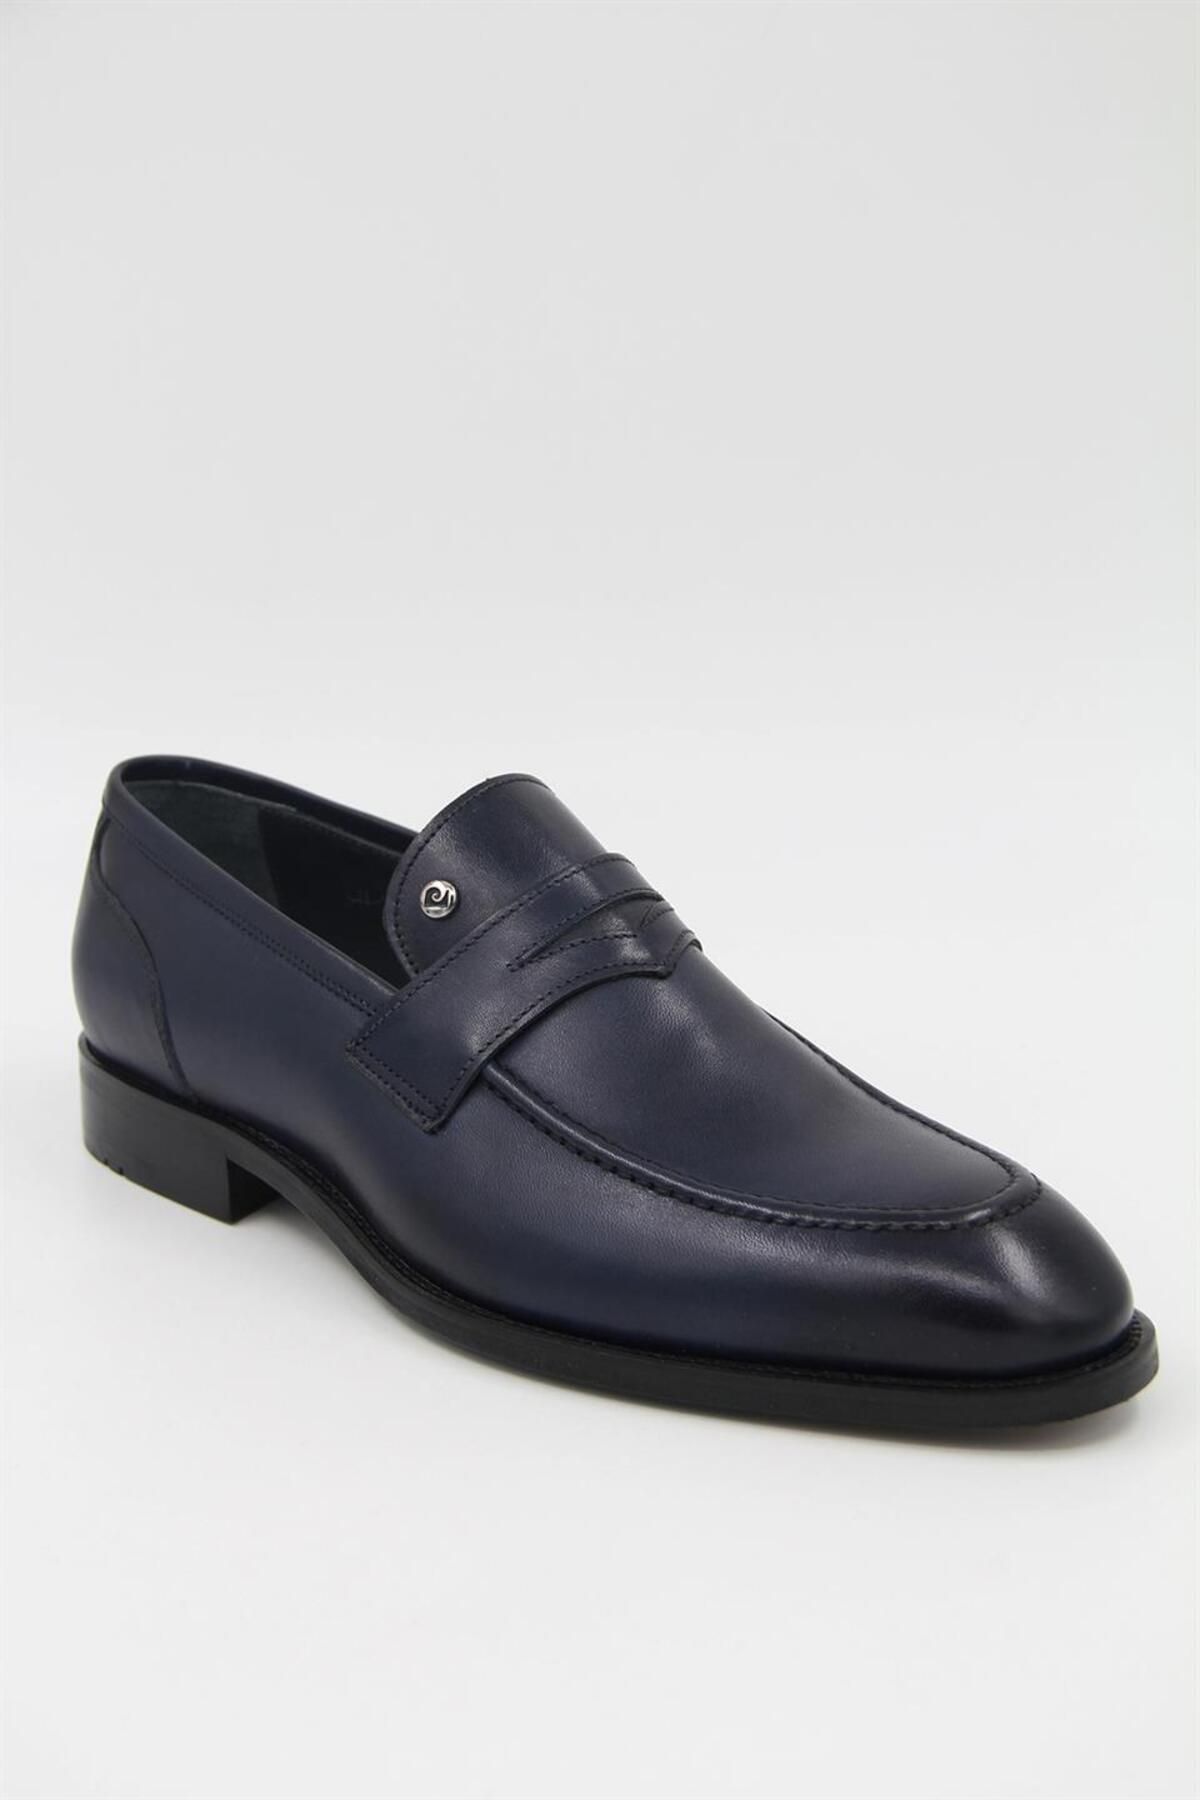 Pierre Cardin 661302 Erkek Klasik Ayakkabı - Lacivert